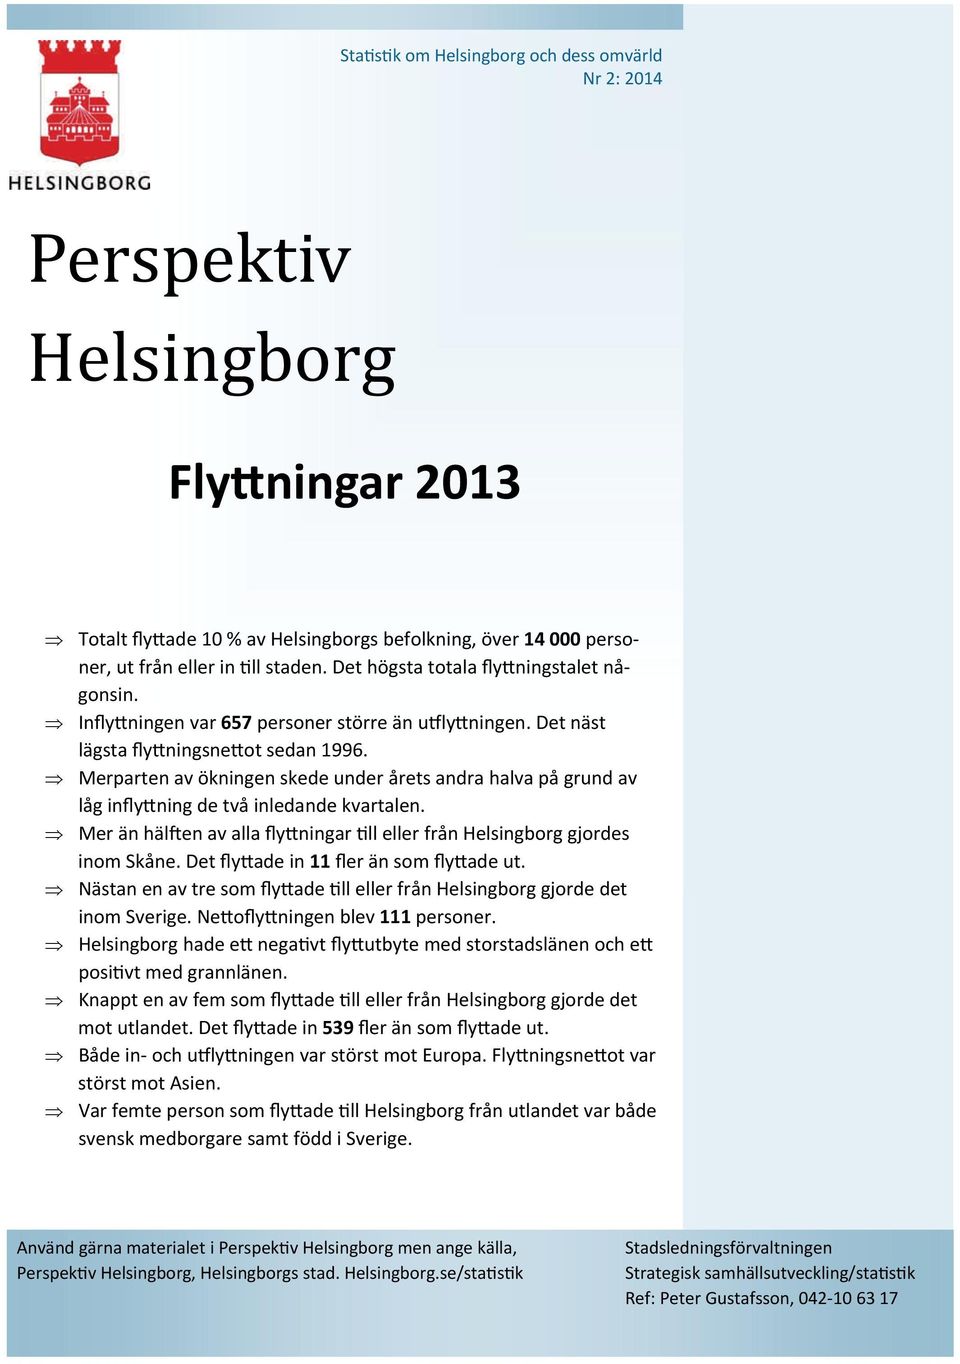 Merparten av ökningen skede under årets andra halva på grund av låg infly ning de två inledande kvartalen. Mer än häl en av alla fly ningar ll eller från Helsingborg gjordes inom Skåne.